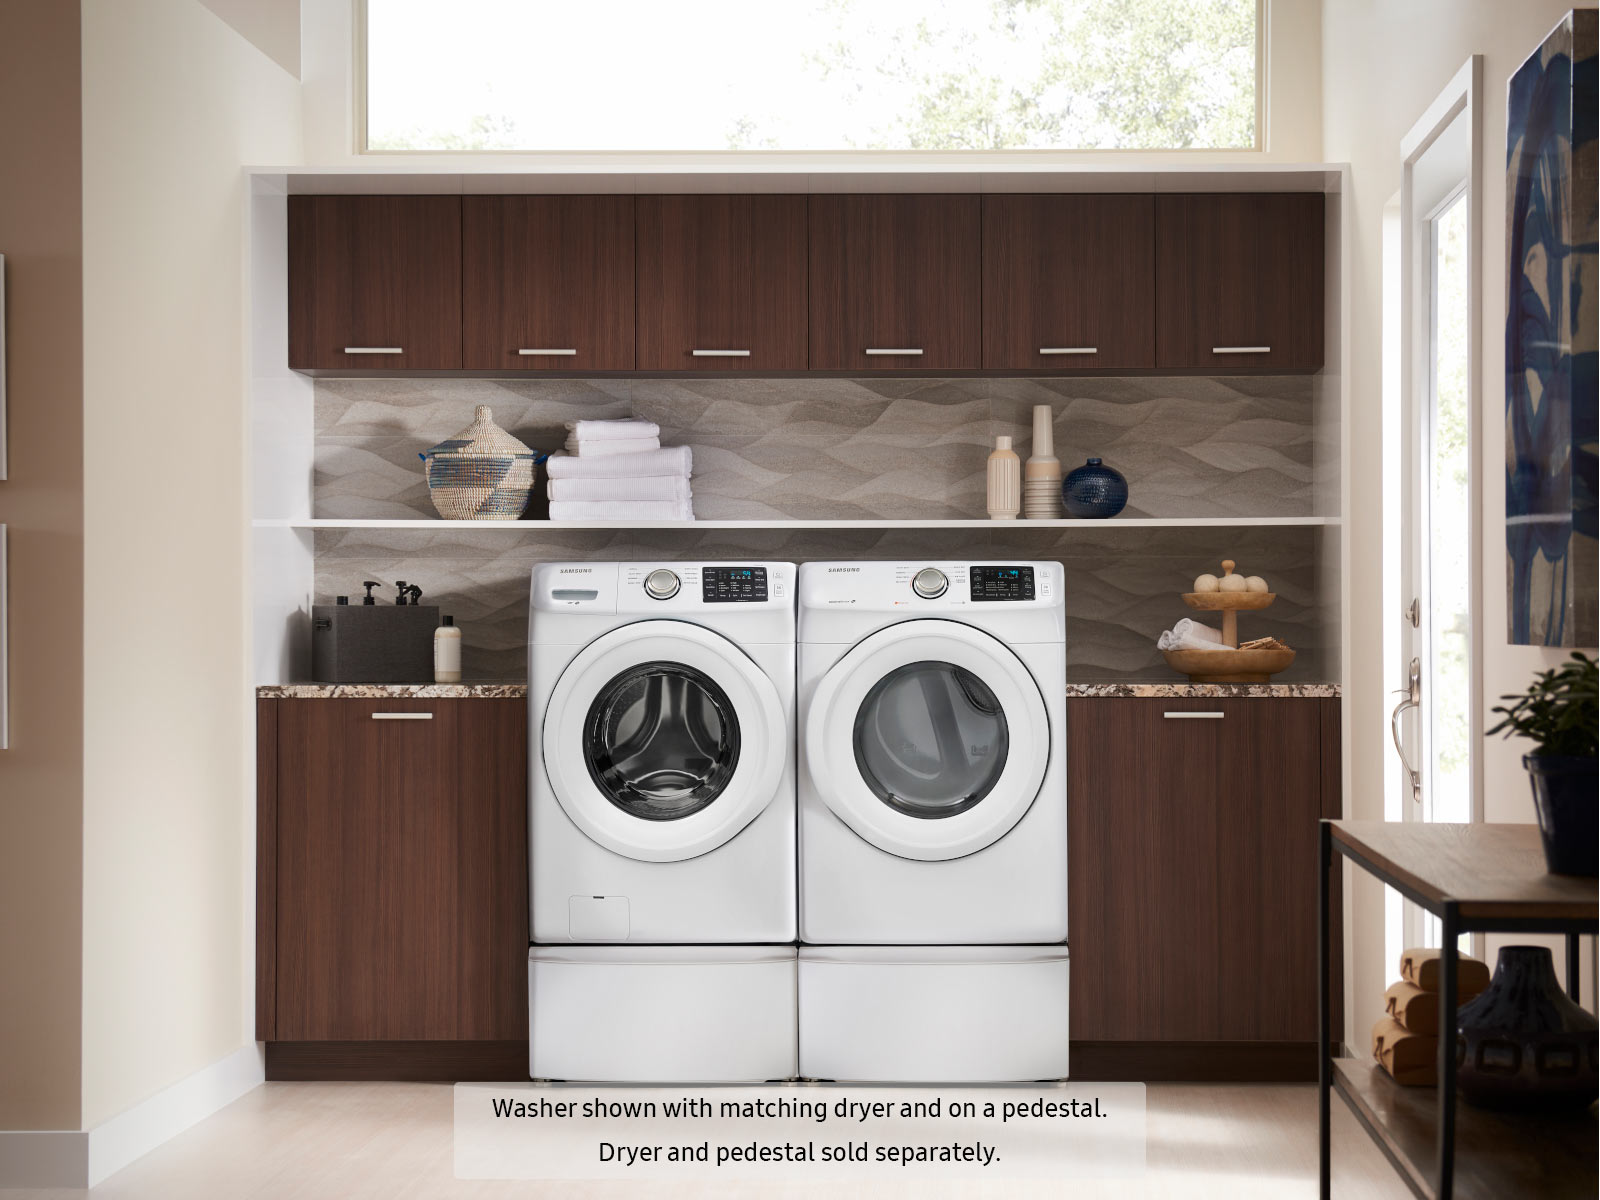 WF42H5000AW: Quiet Front-Load Washing Machine with VRT | Samsung US